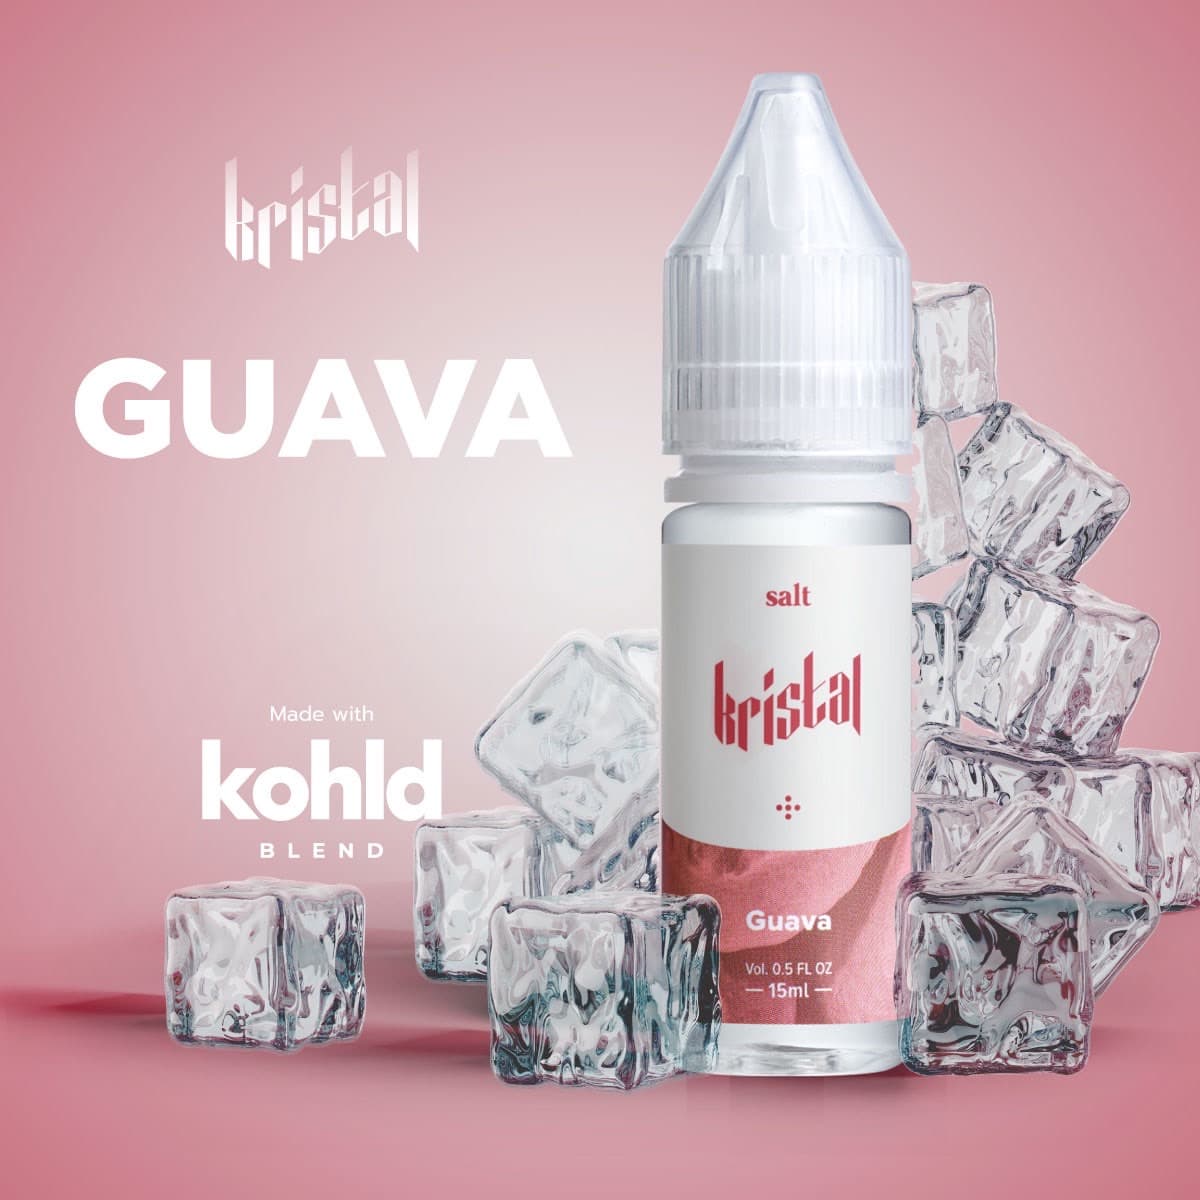 Kristal Guava Saltnic 15ml